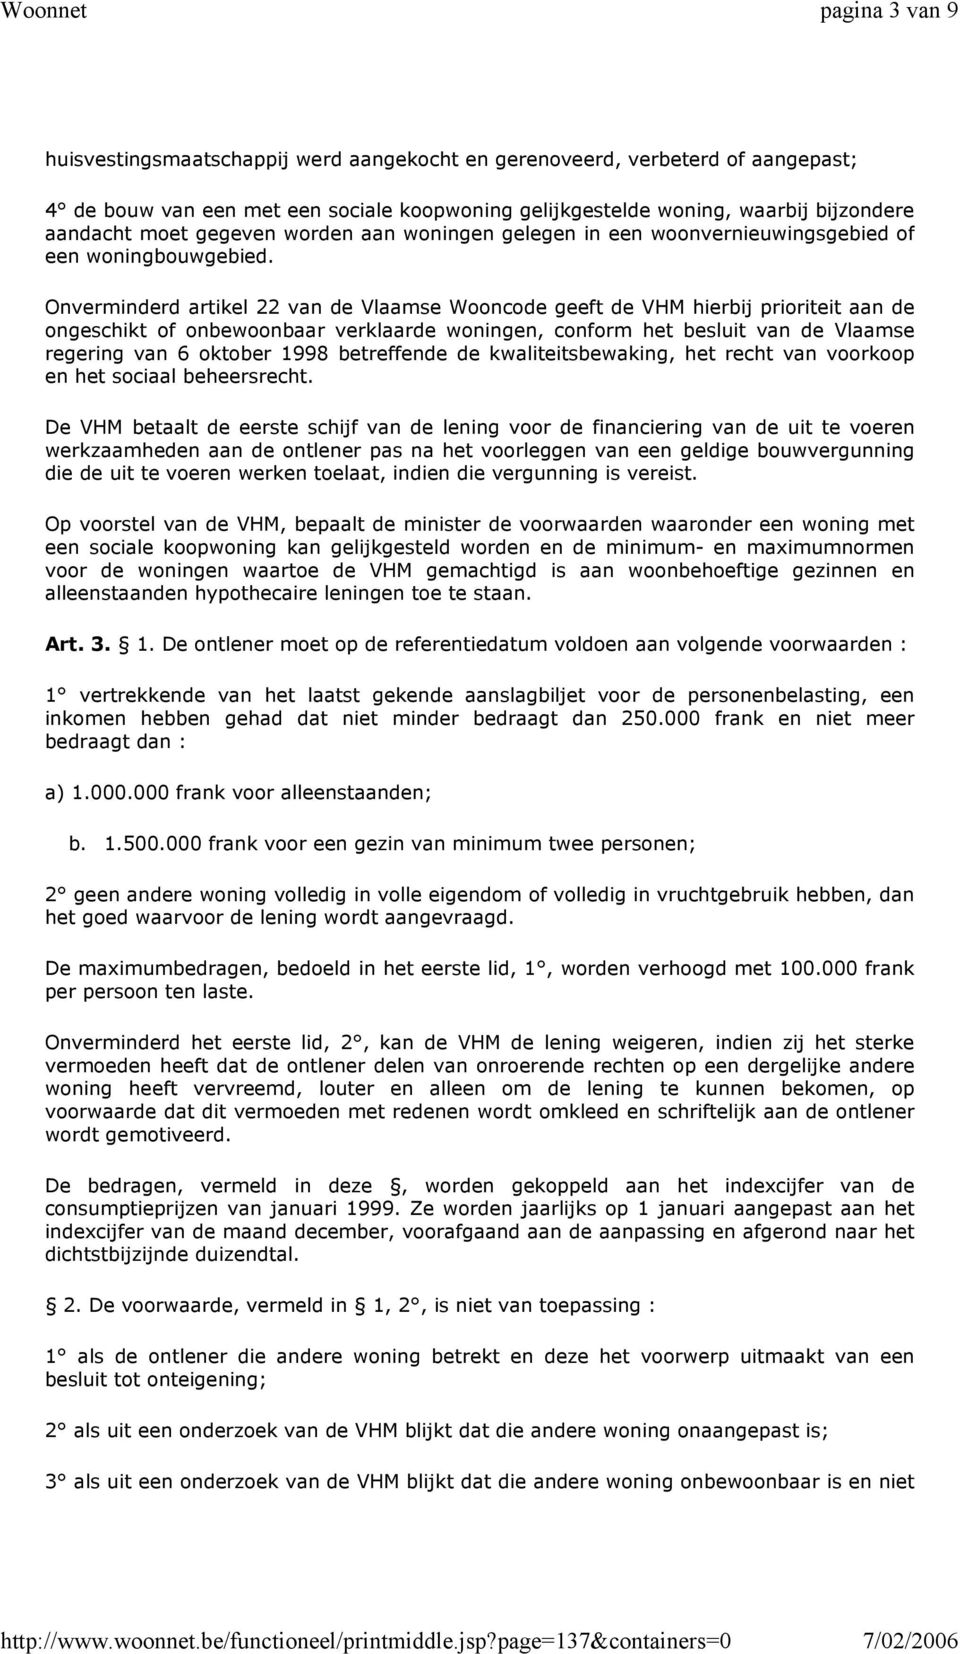 Onverminderd artikel 22 van de Vlaamse Wooncode geeft de VHM hierbij prioriteit aan de ongeschikt of onbewoonbaar verklaarde woningen, conform het besluit van de Vlaamse regering van 6 oktober 1998